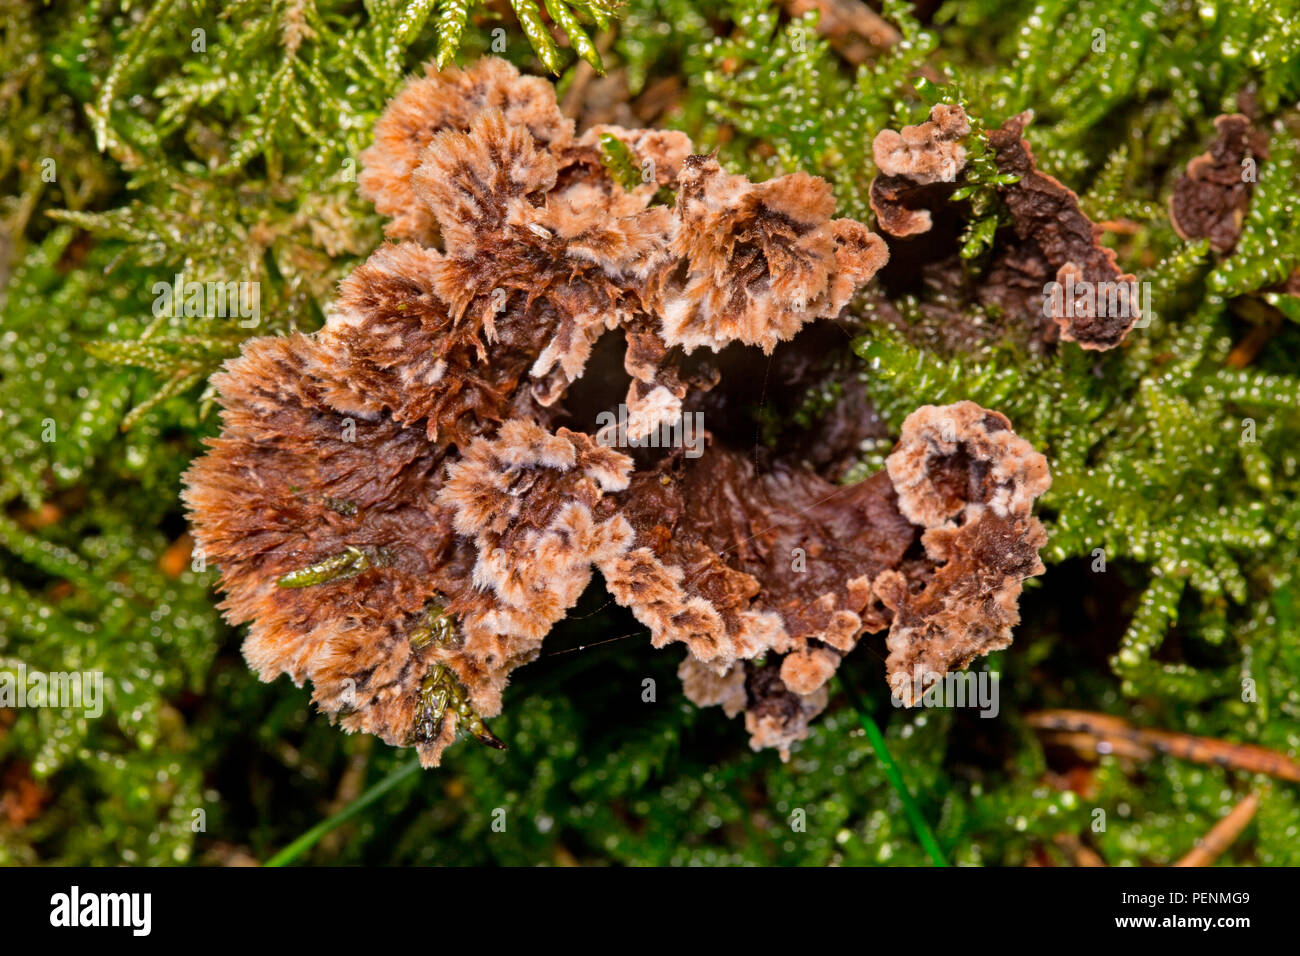 earthfan fungus, (Thelephora caryophyllea) Stock Photo